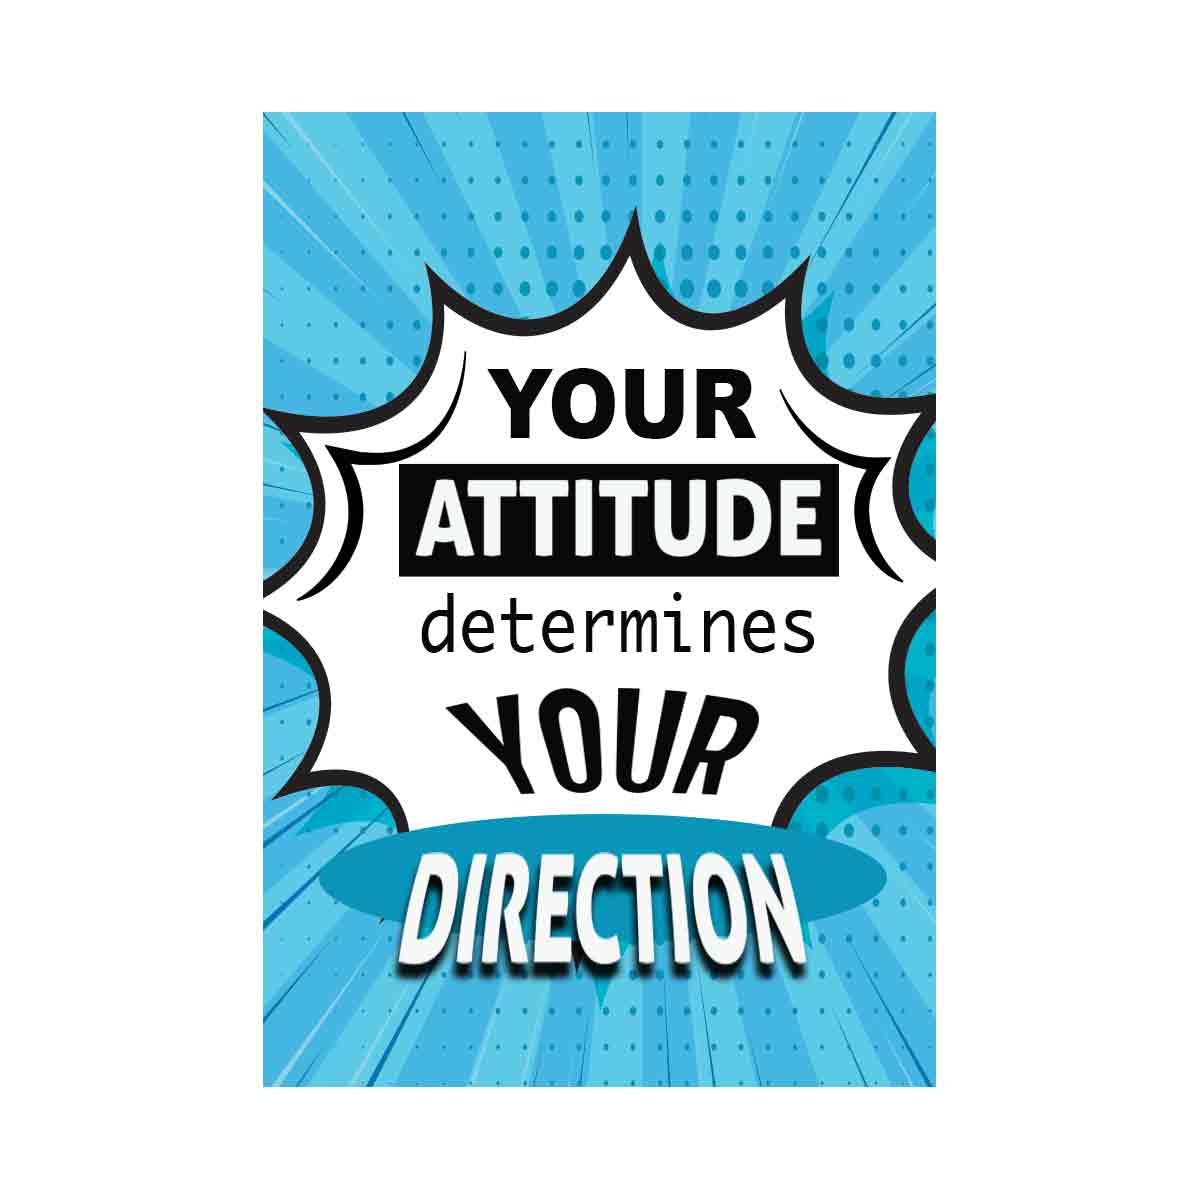 Your attitude determines